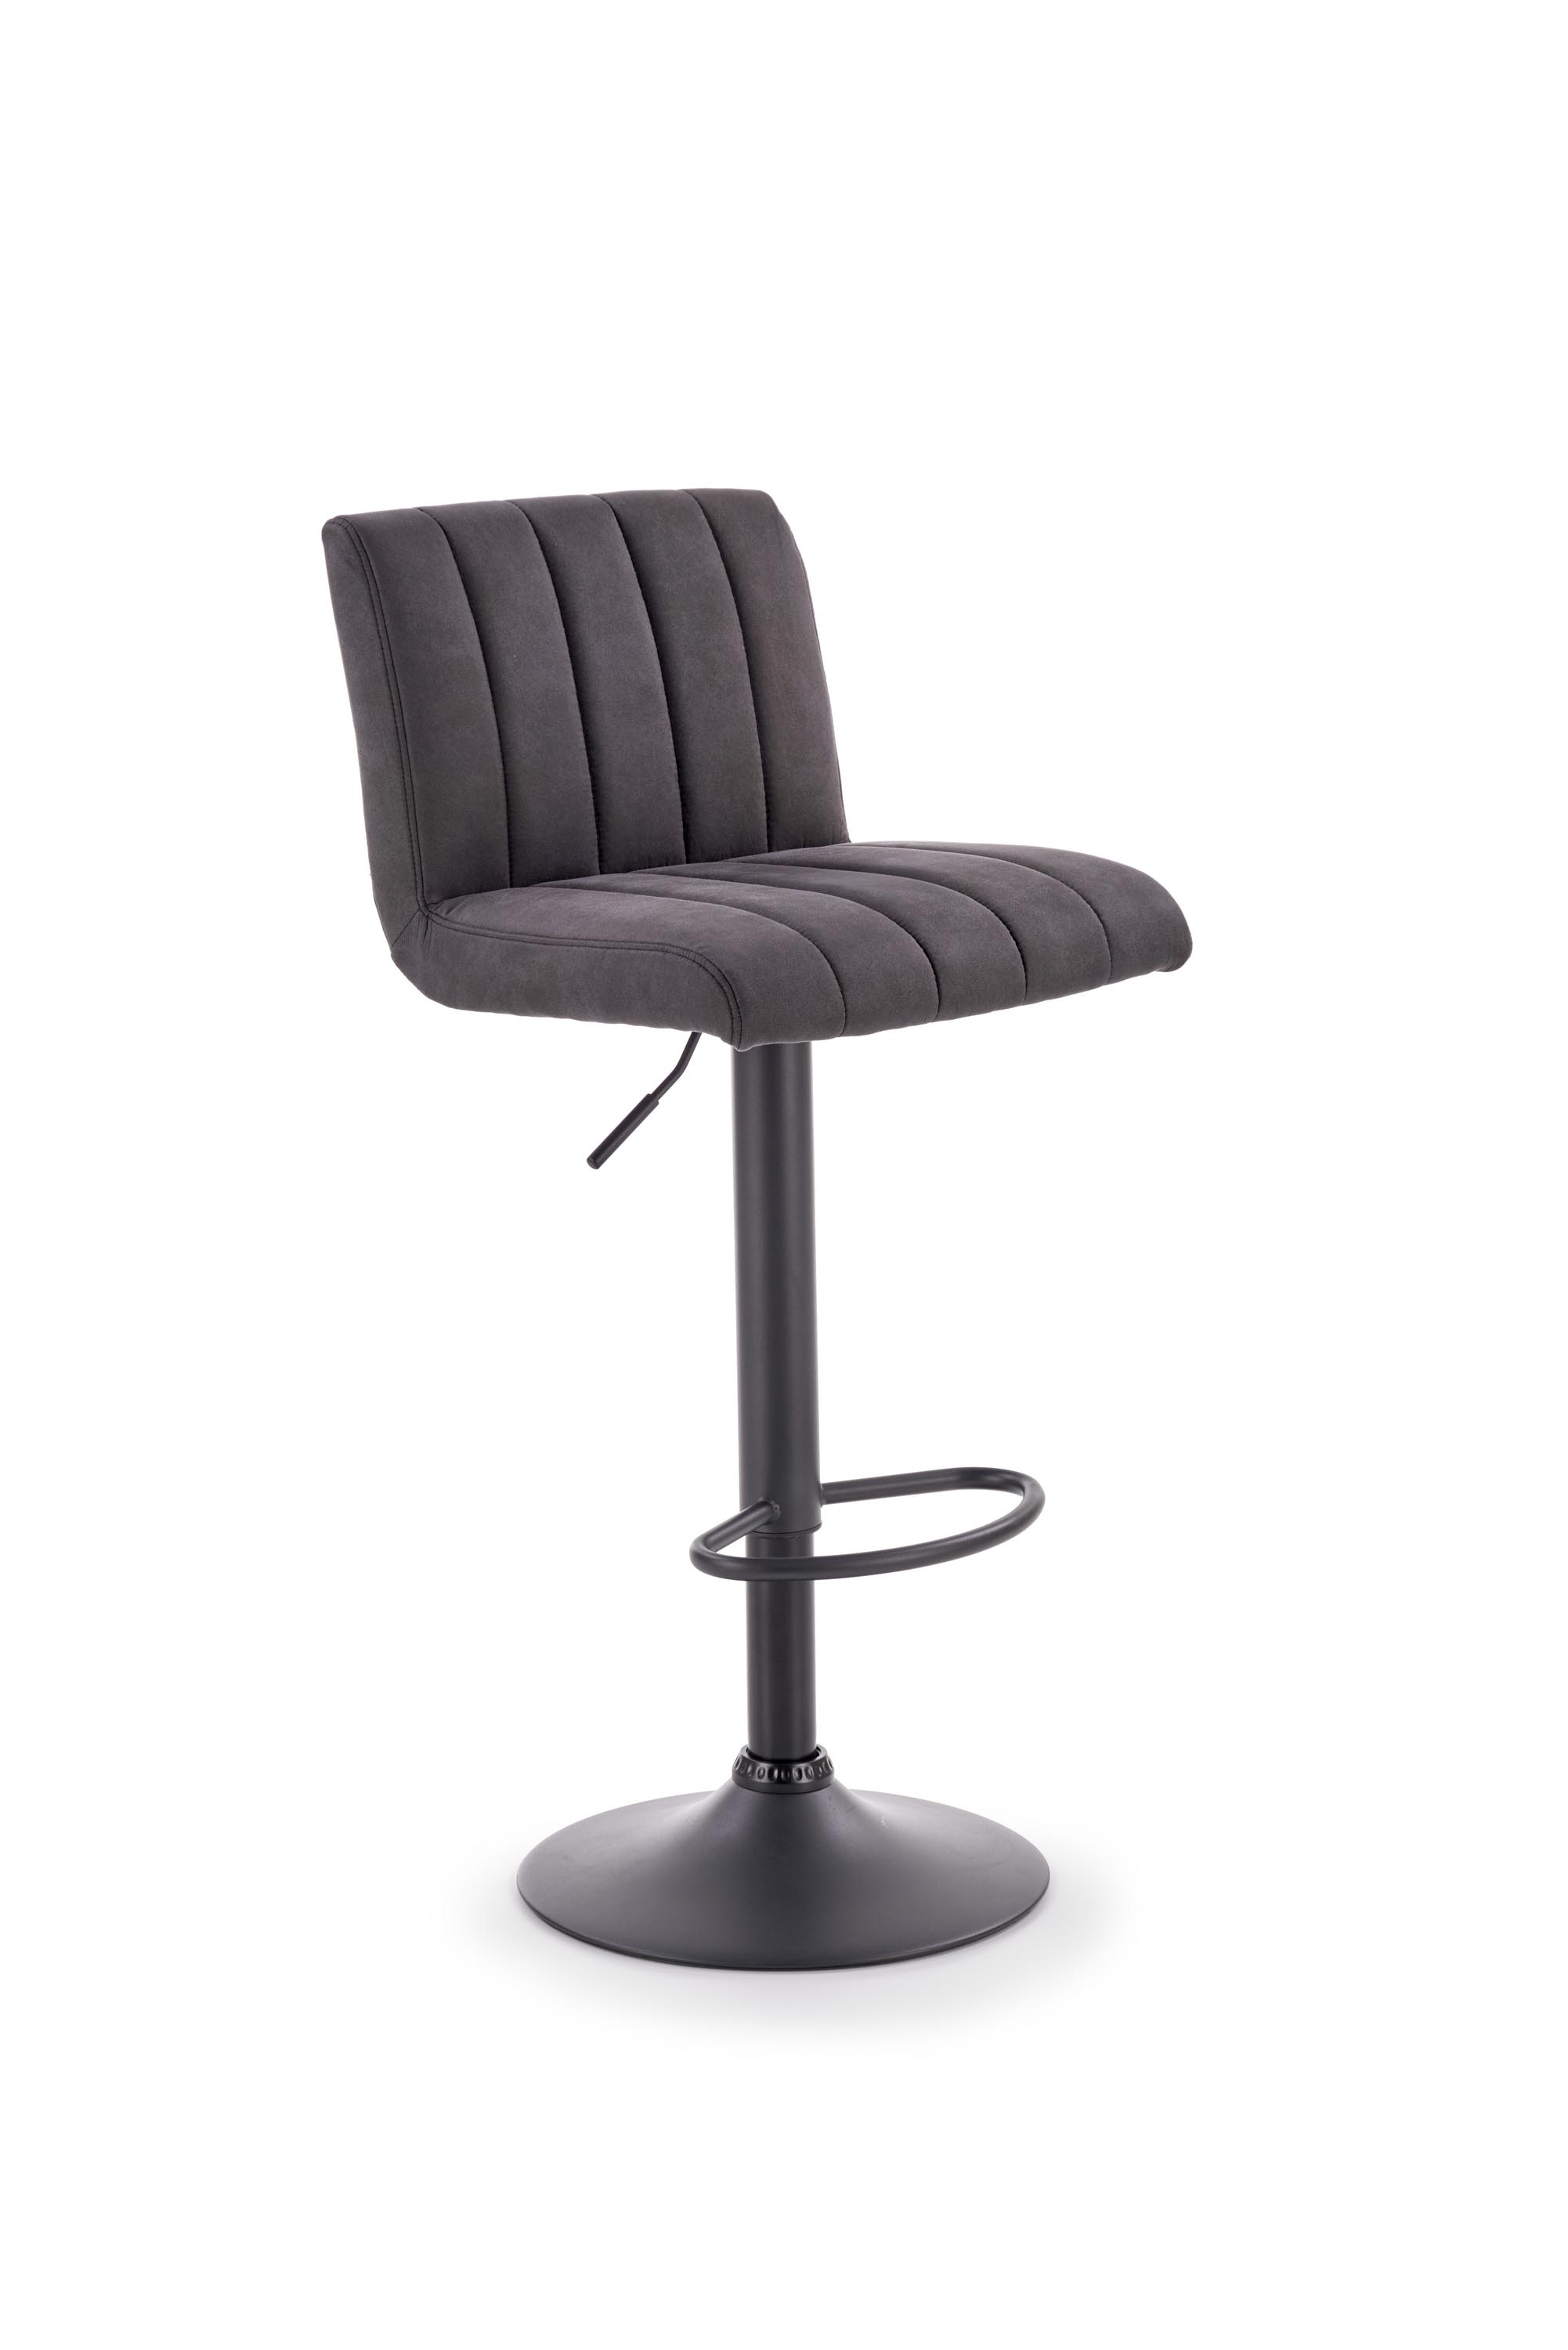 H89 Barová židle Podstavec - Černý, Čalounění - tmavý popel h89 Barová židle Rošt - Černý, Čalounění - tmavý popel